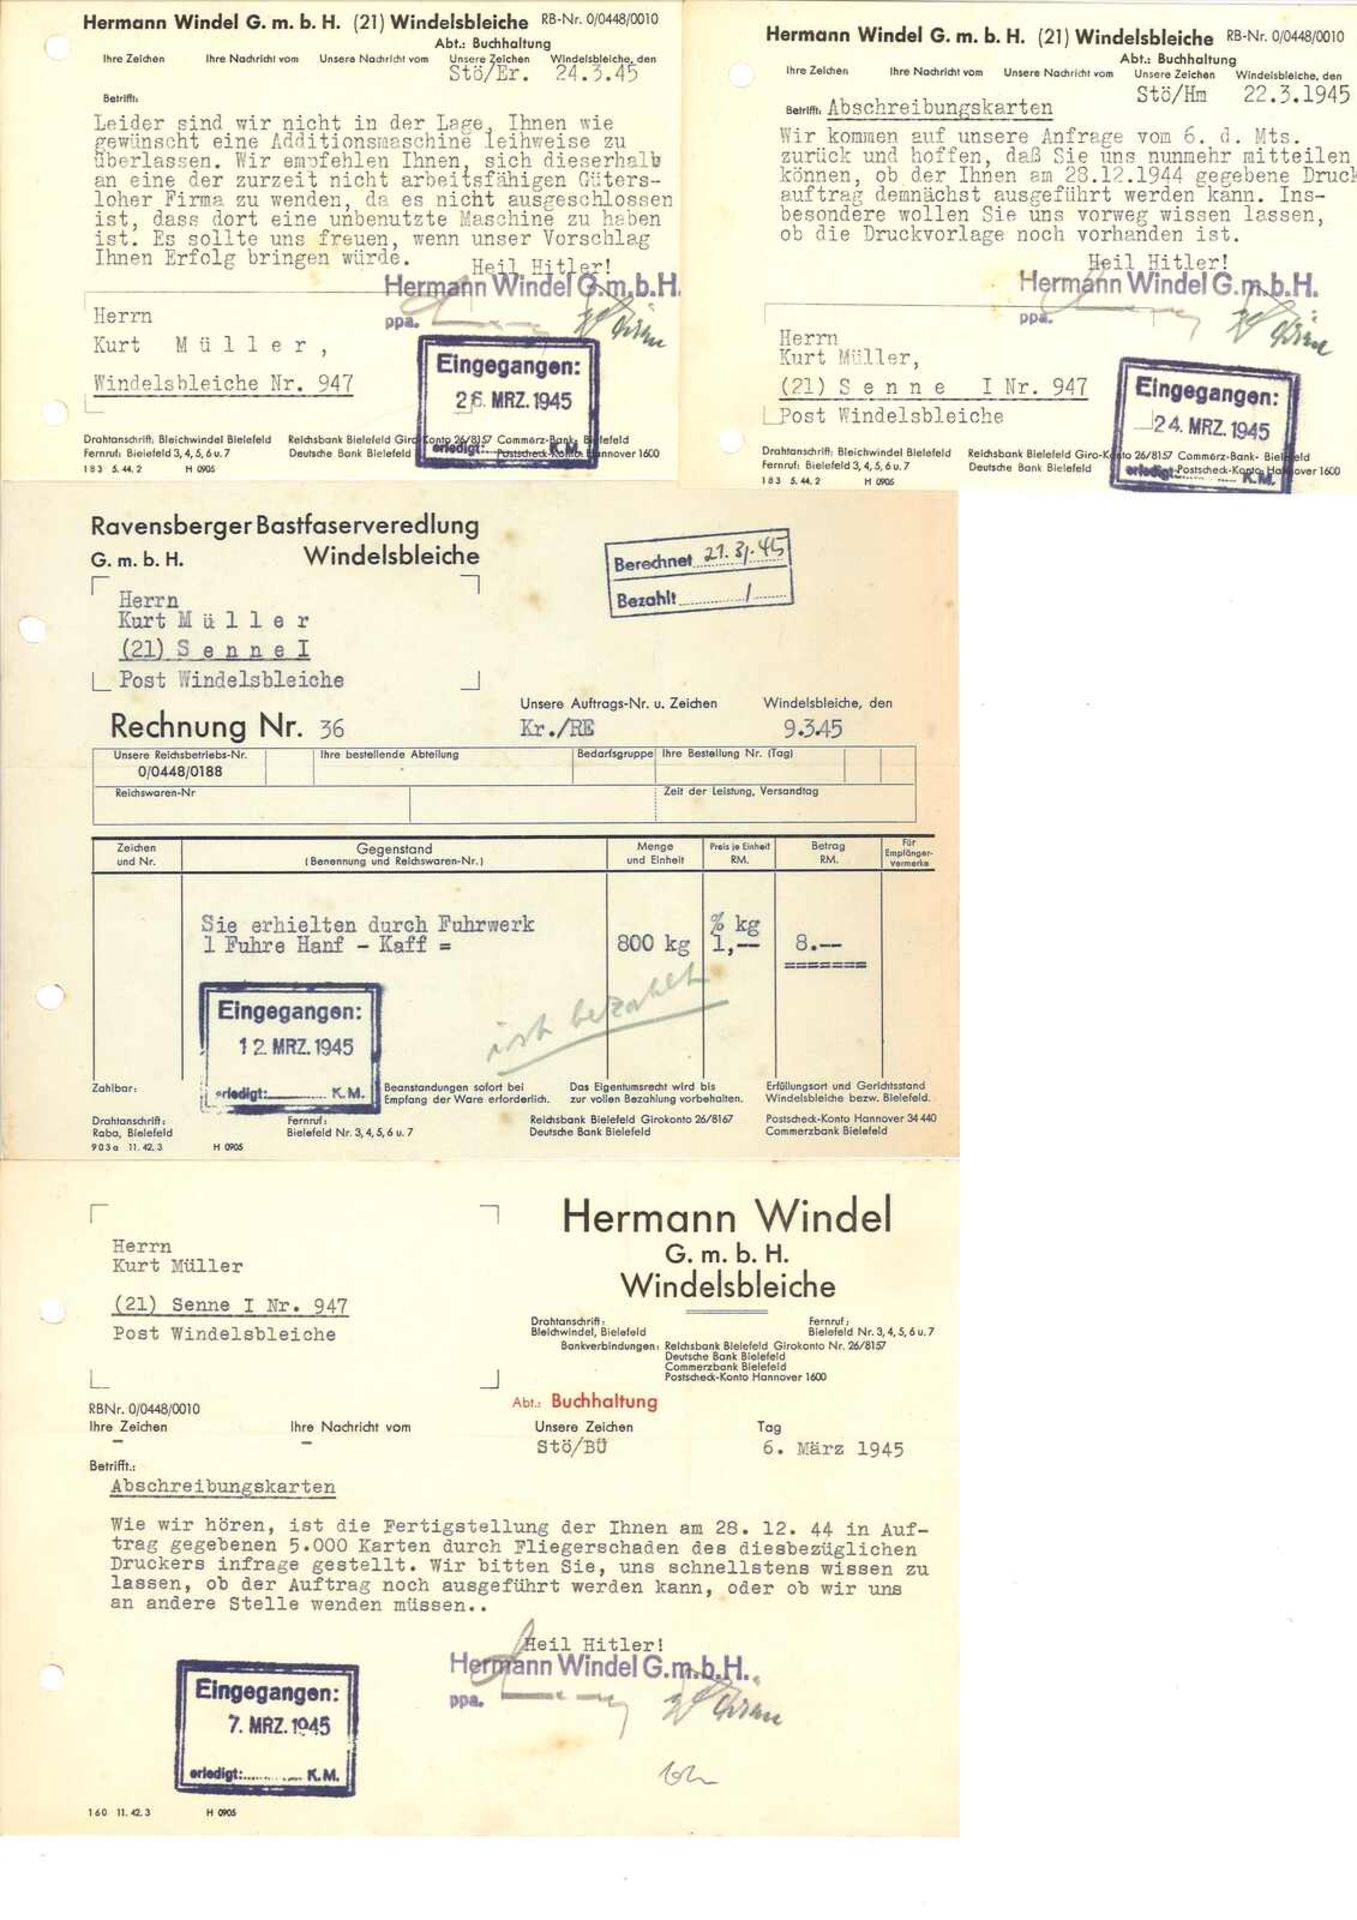 großer Ringbinder mit Dokumenten zum Thema "Bielefeld", viele alte Rechnungen, Belege, Schreiben a - Image 11 of 12